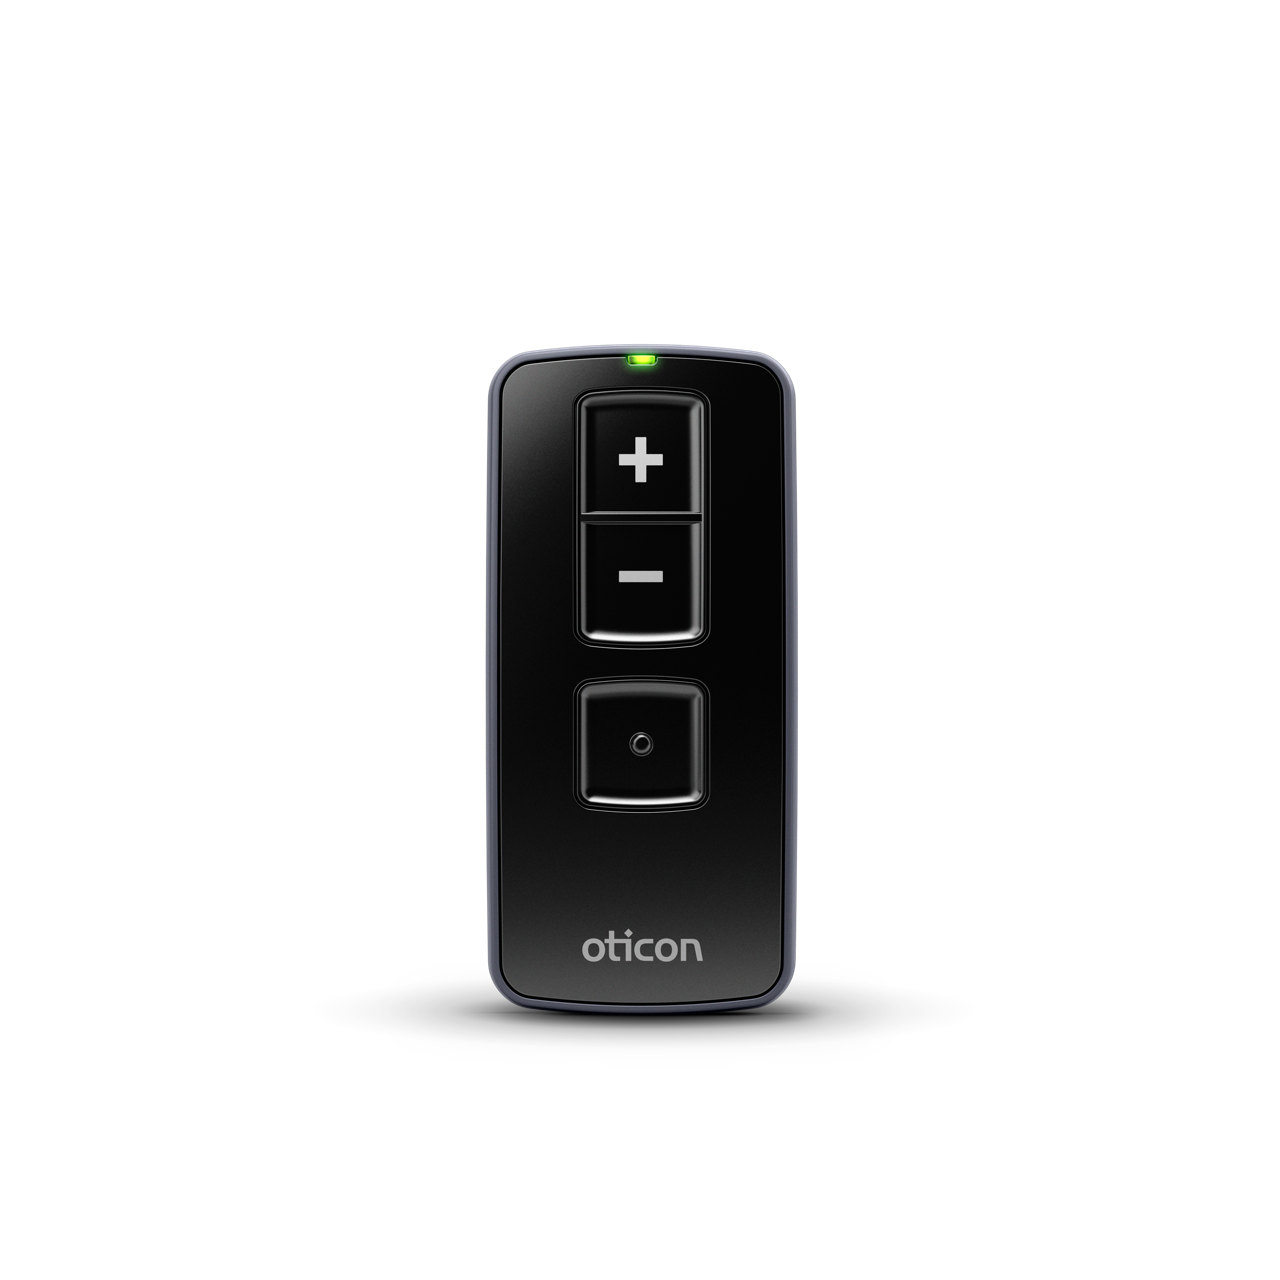 Die Oticon Remote Control 3.0-Fernbedienung ermöglicht es Ihnen, die Programme Ihrer Hörgeräte zu wechseln und die Lautstärke zu regulieren.